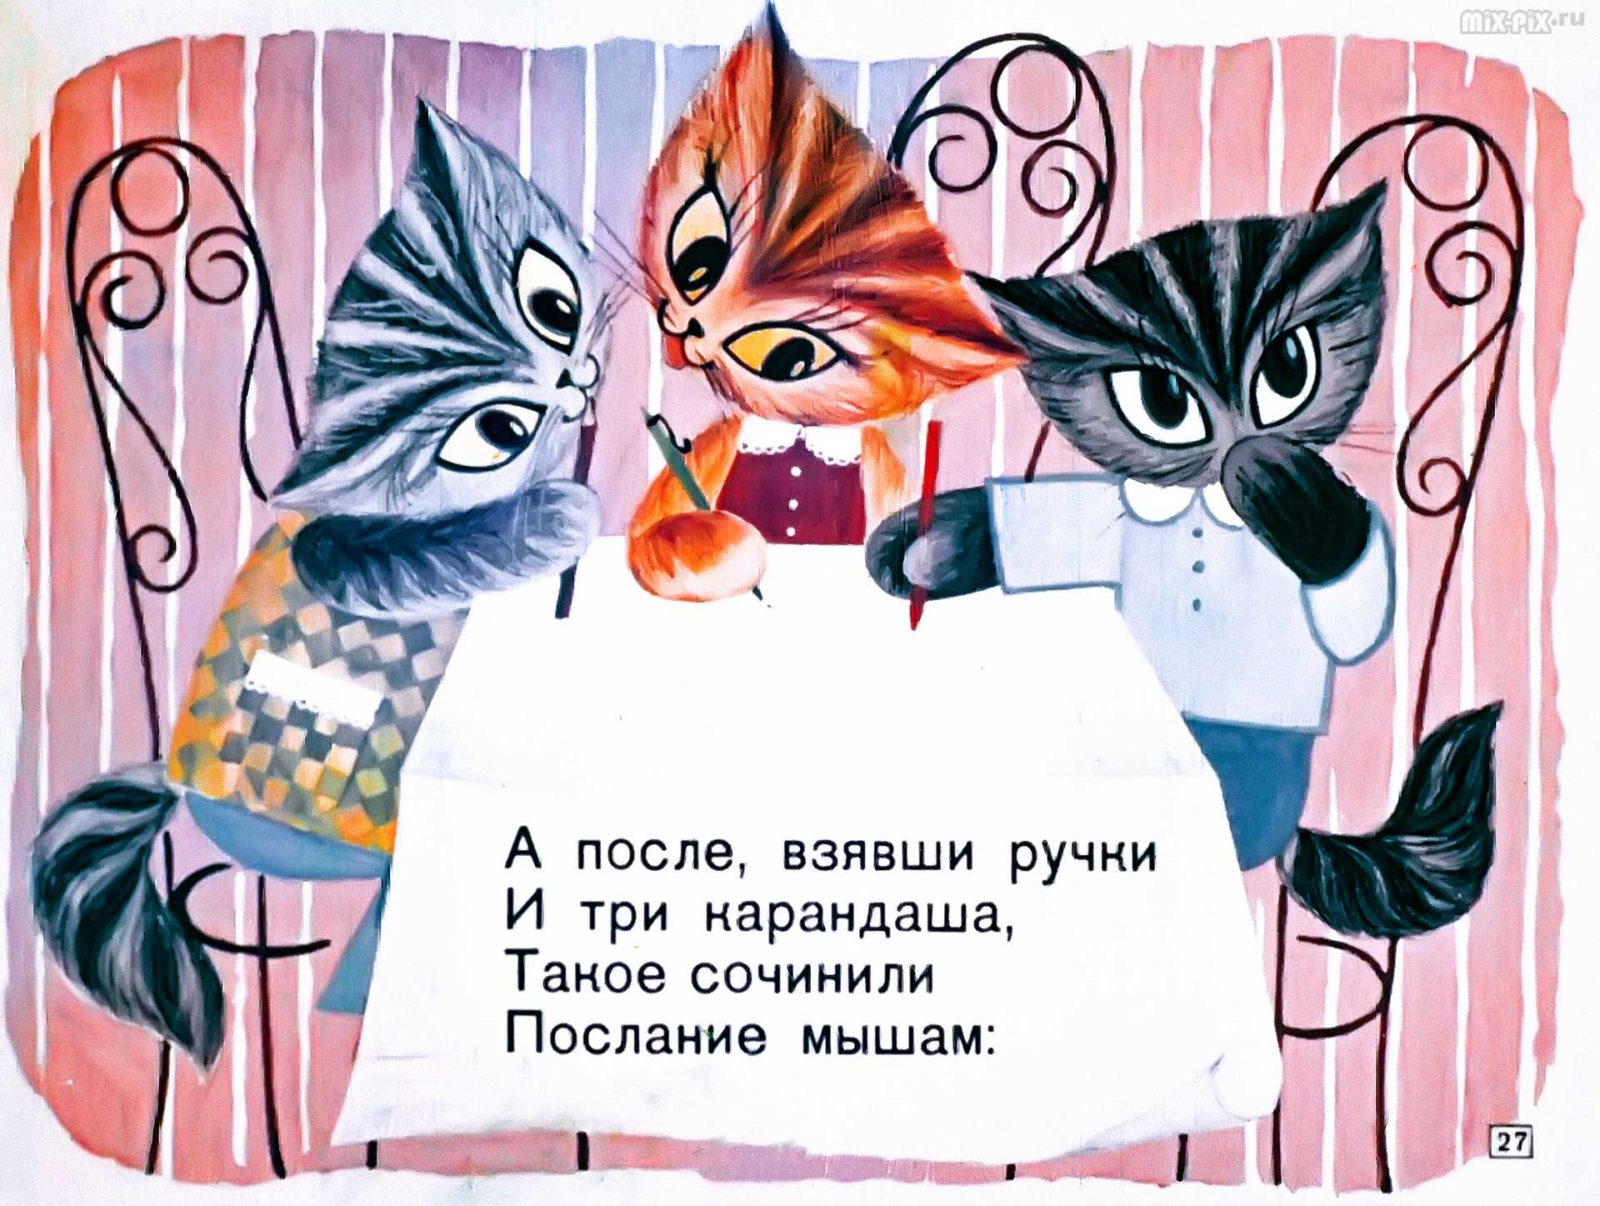 Касьянка, Том и Плут (1968) 36